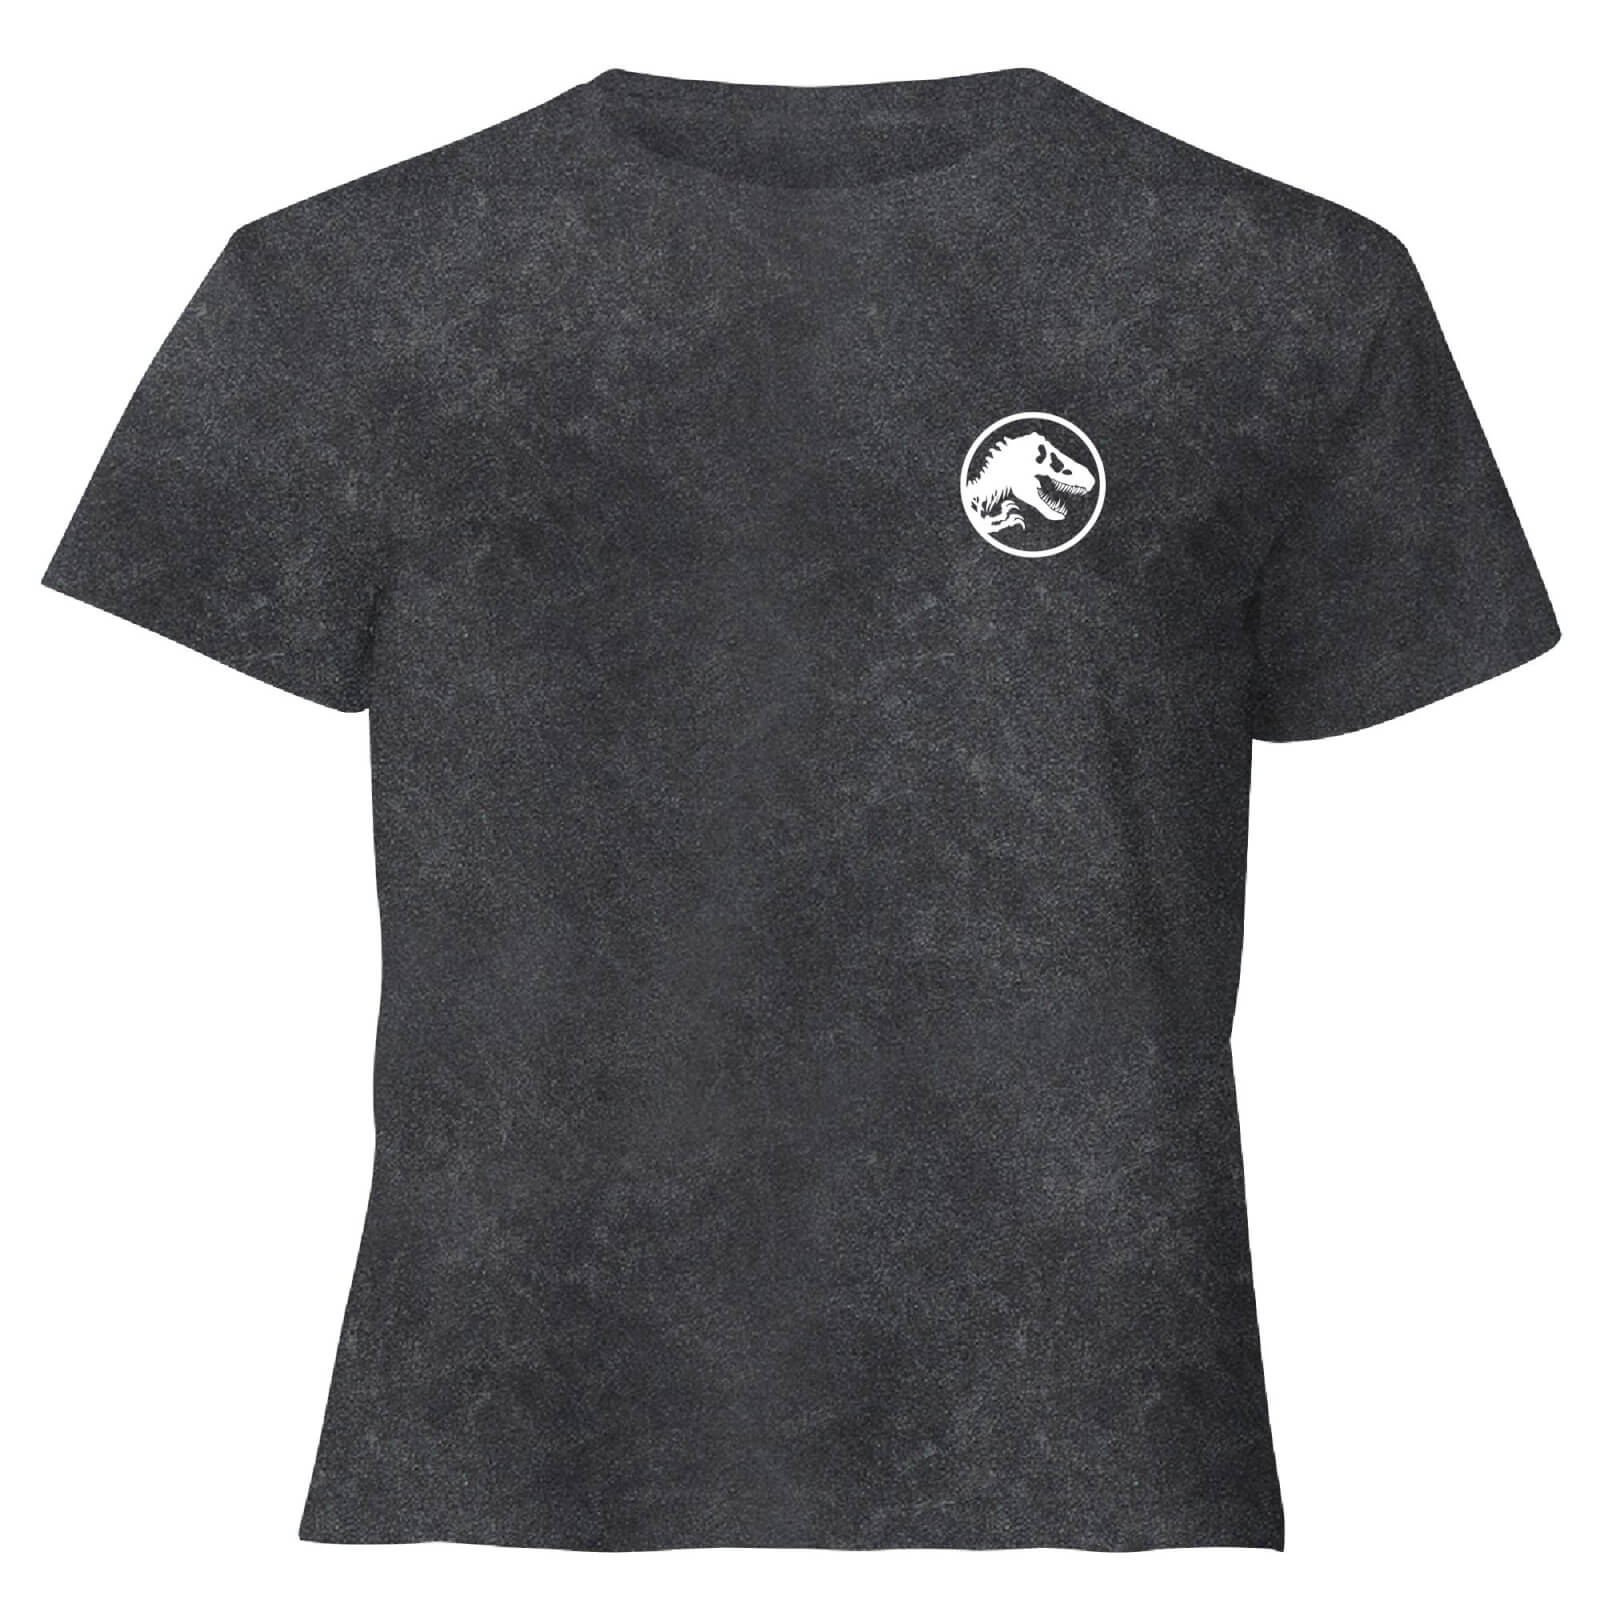 Image of Jurassic Park Primal Limited Variant Ranger Logo - Women's Cropped T-Shirt - Black Acid Wash - M - Black Acid Wash